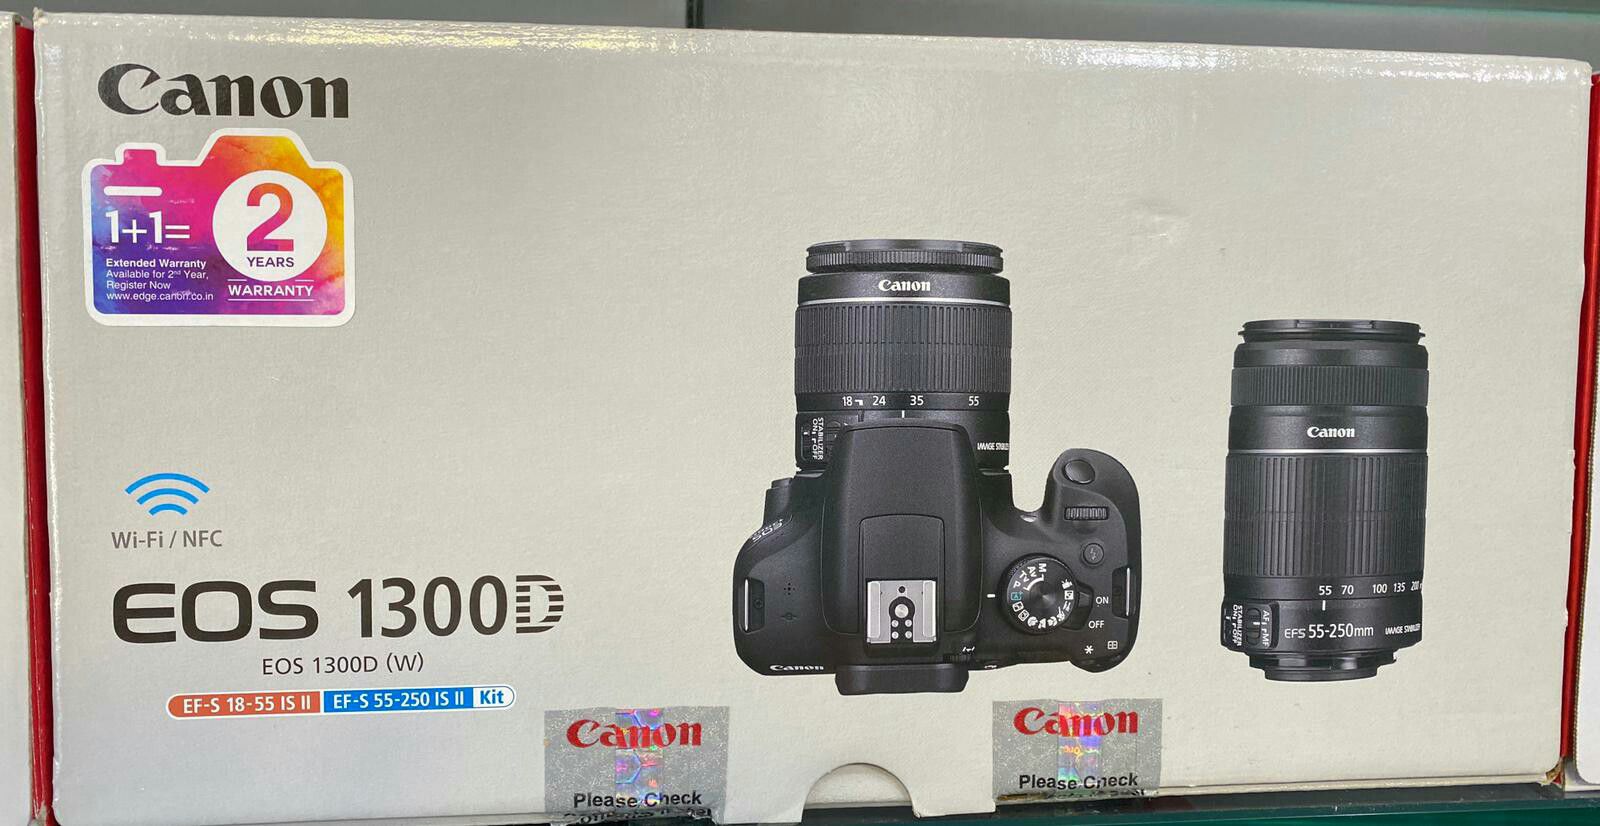 Canon EOS 1300D EF-S 18-55 IS III EF-S 55-250 IS II kit